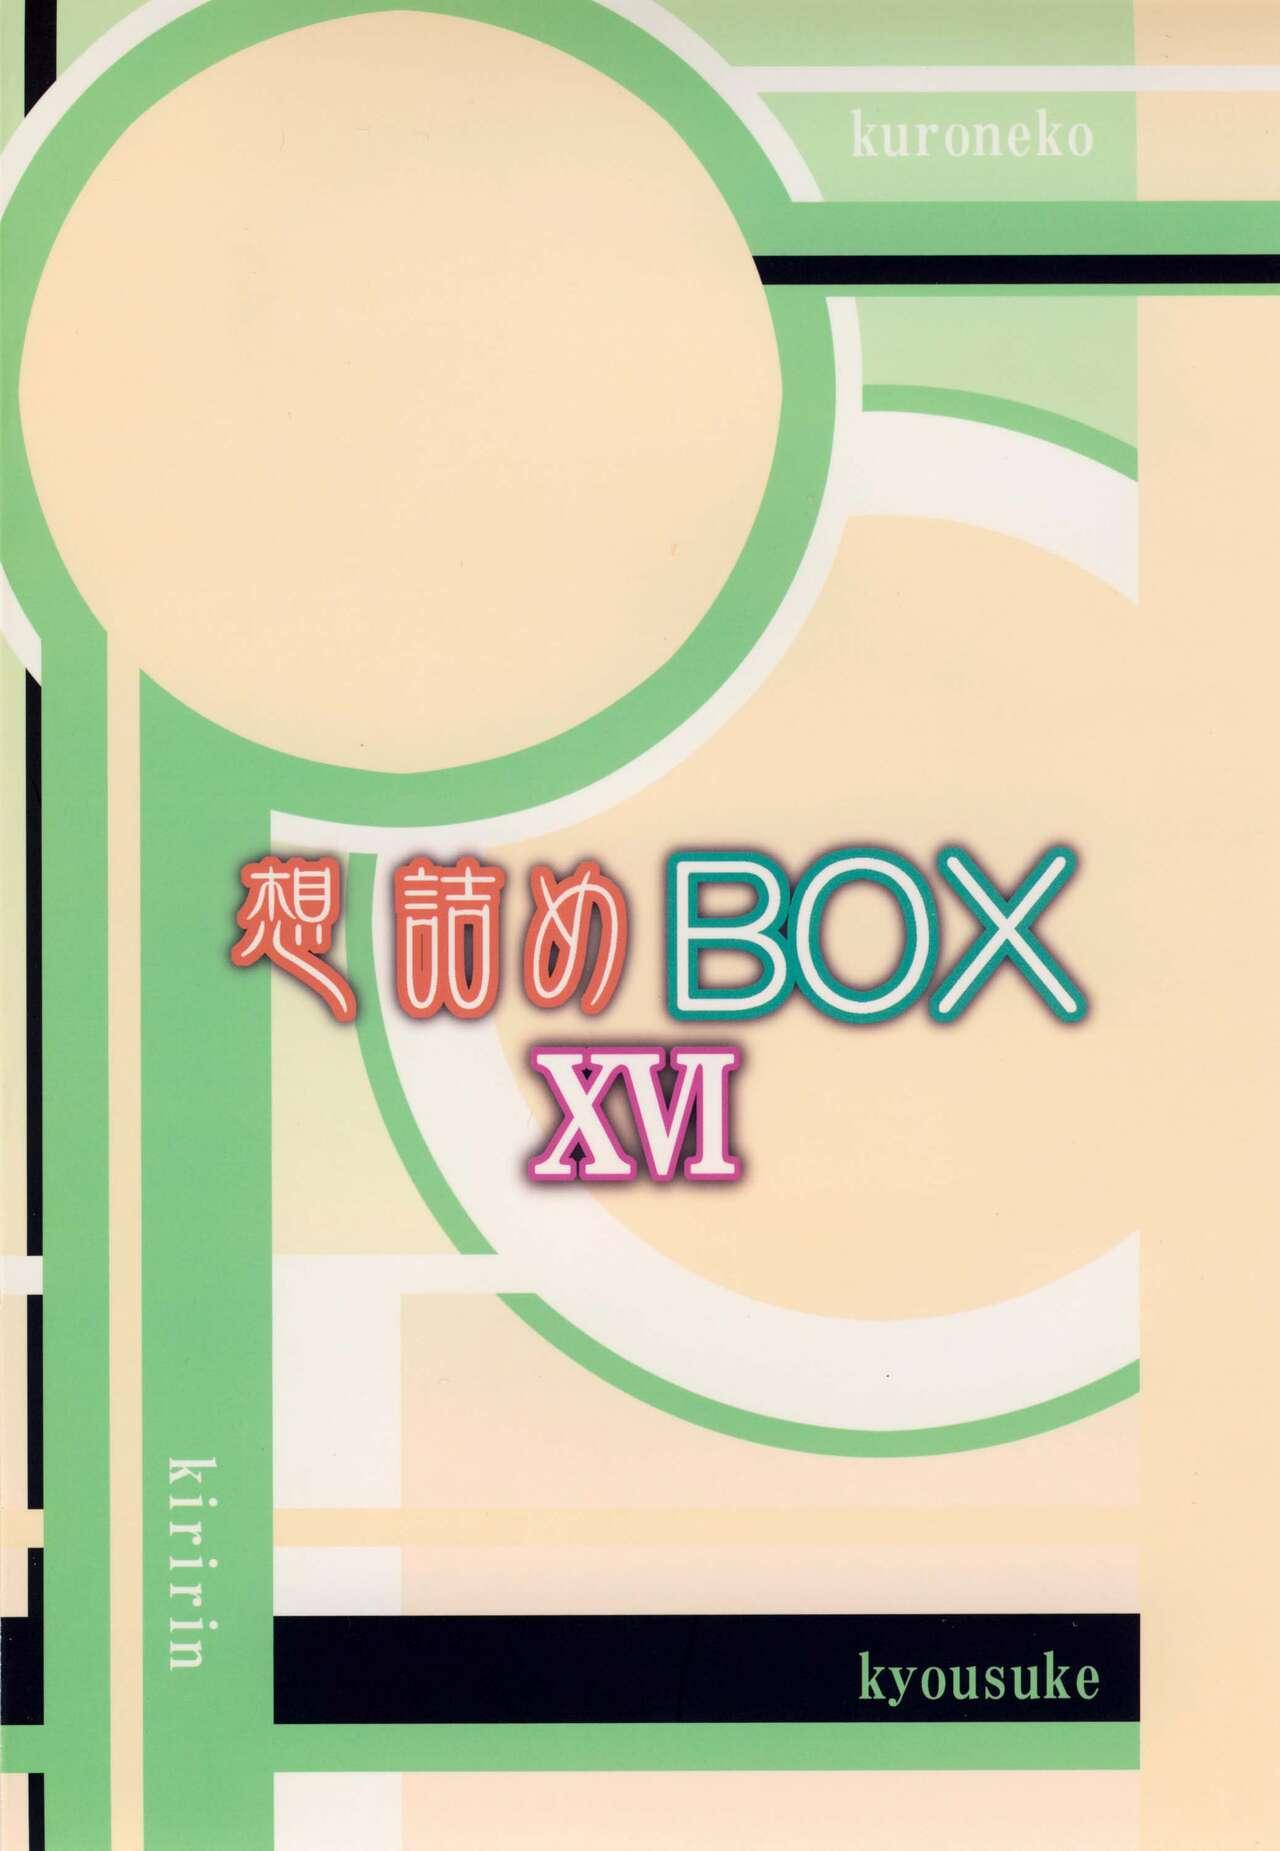 Omodume BOX XVI 27